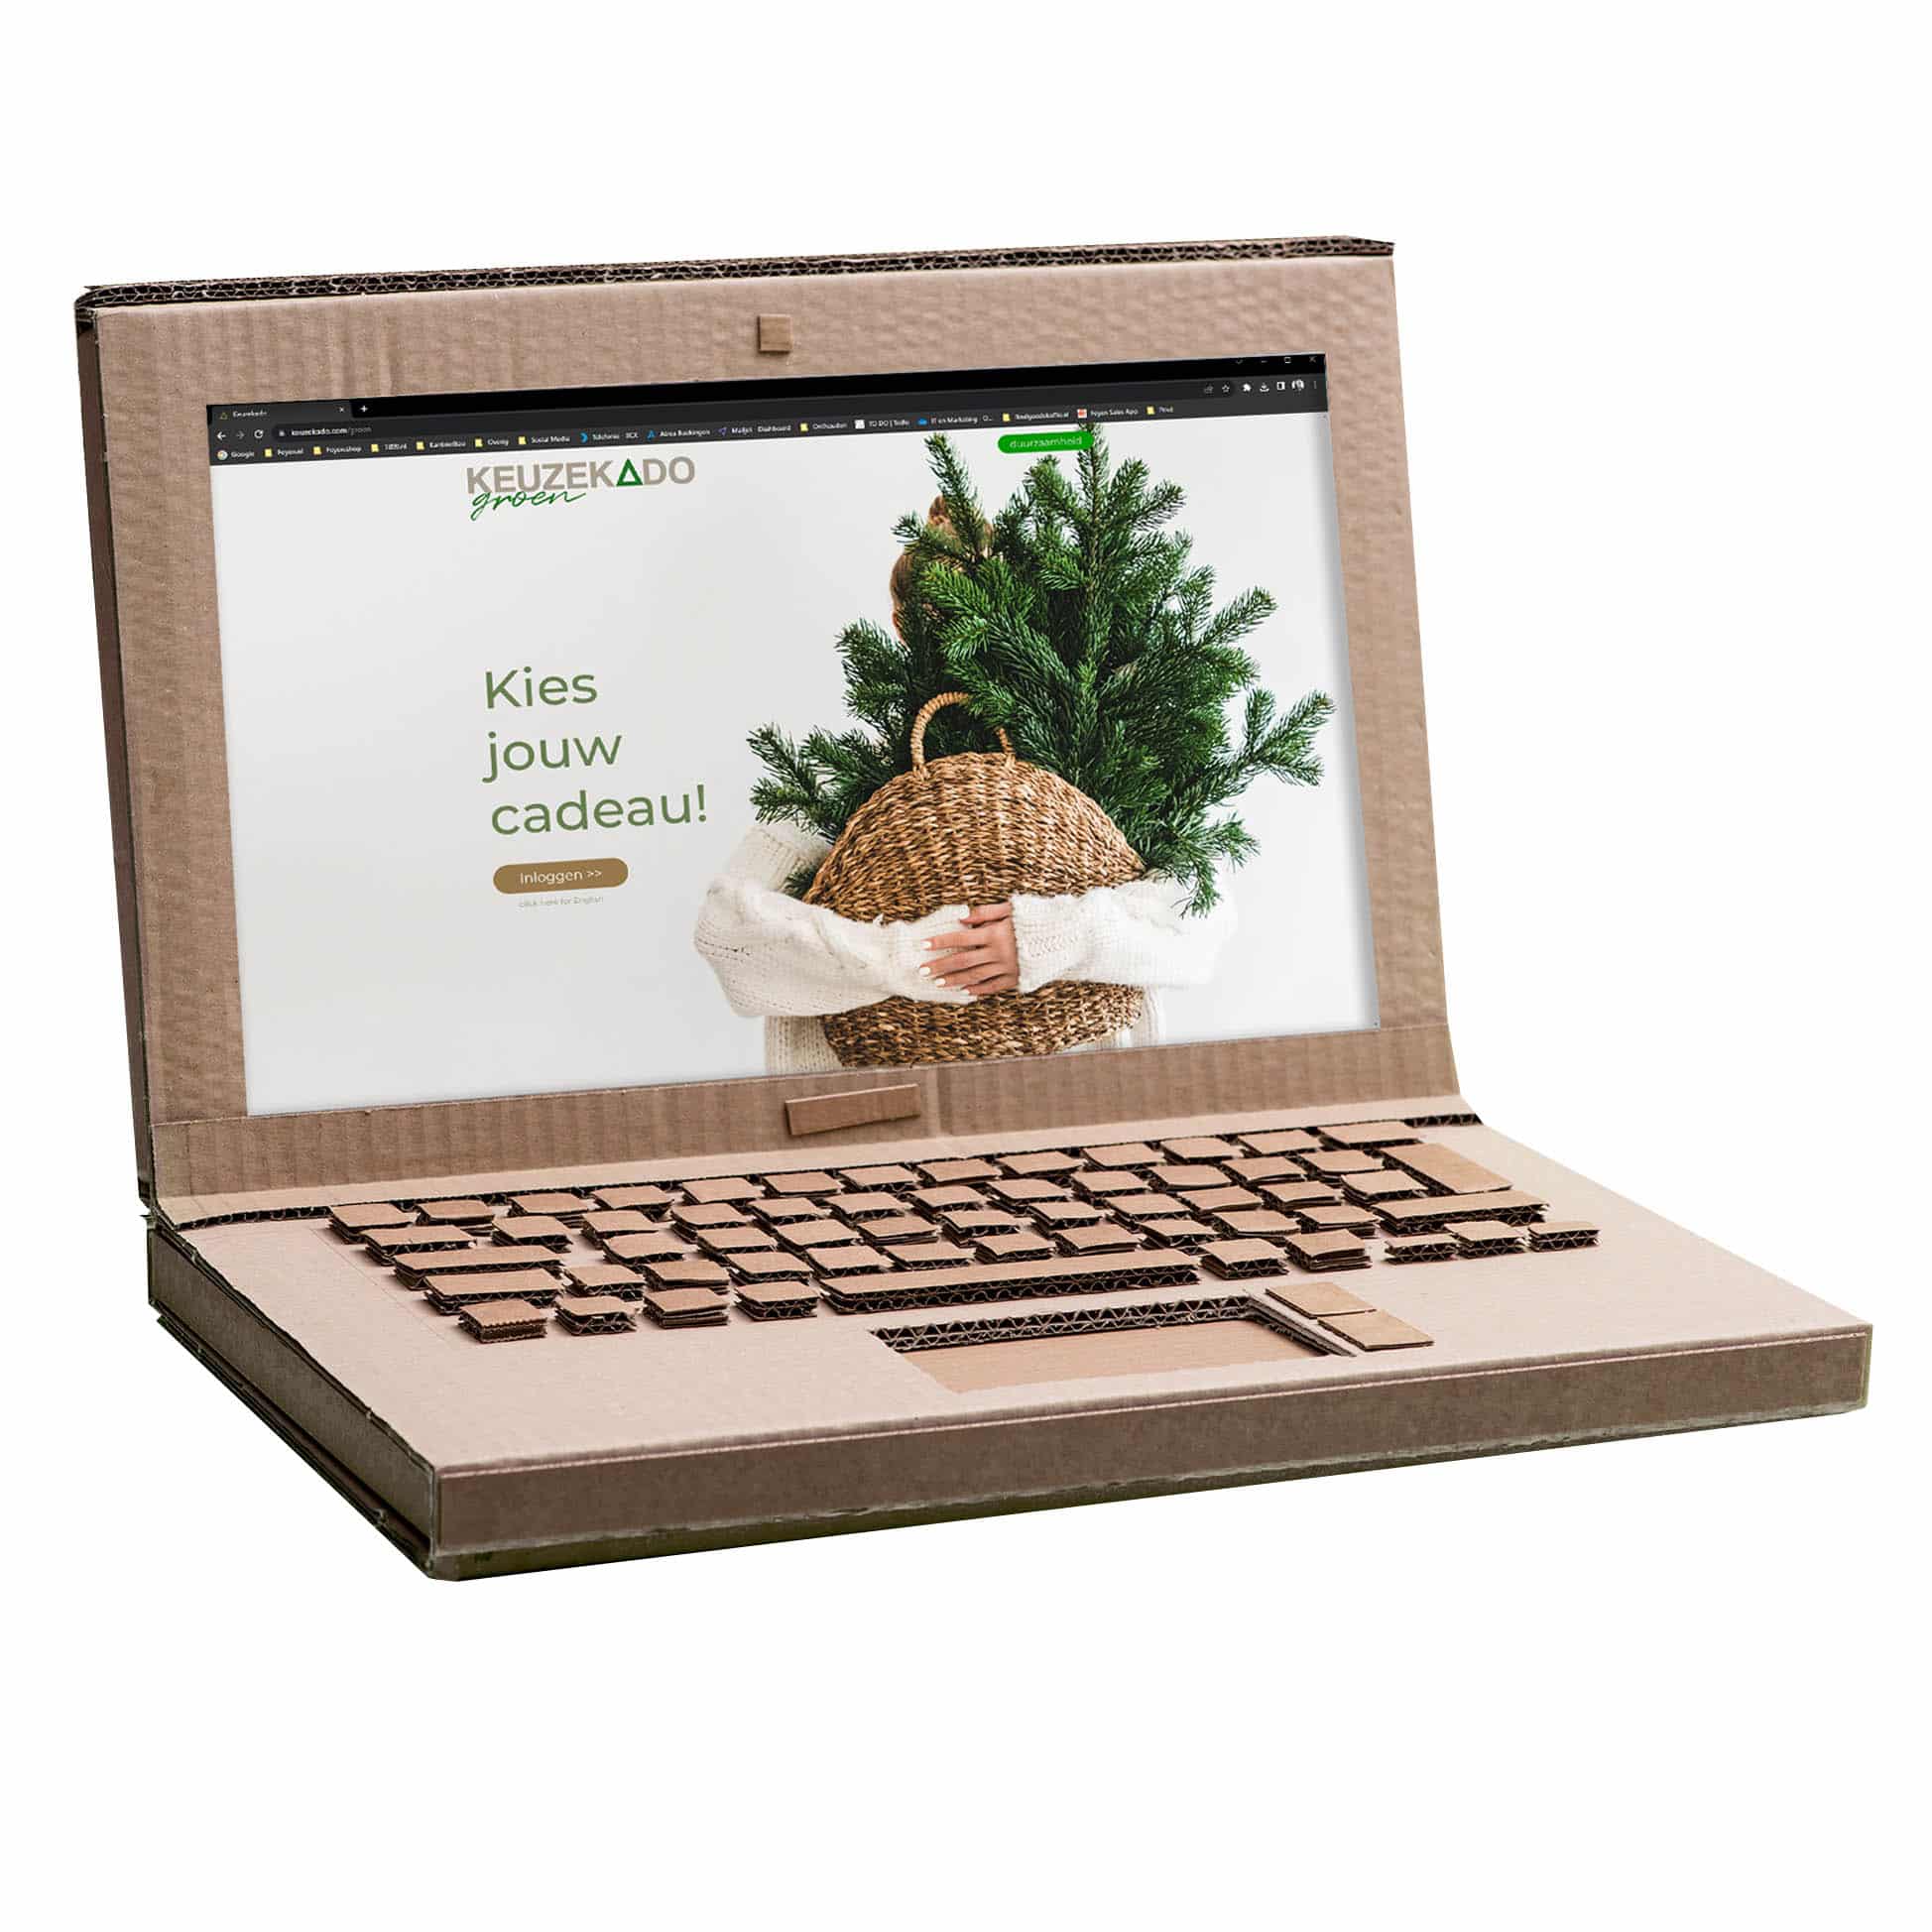 Kartonnen duurzame laptop met een geopende website van Keuzekado Groen